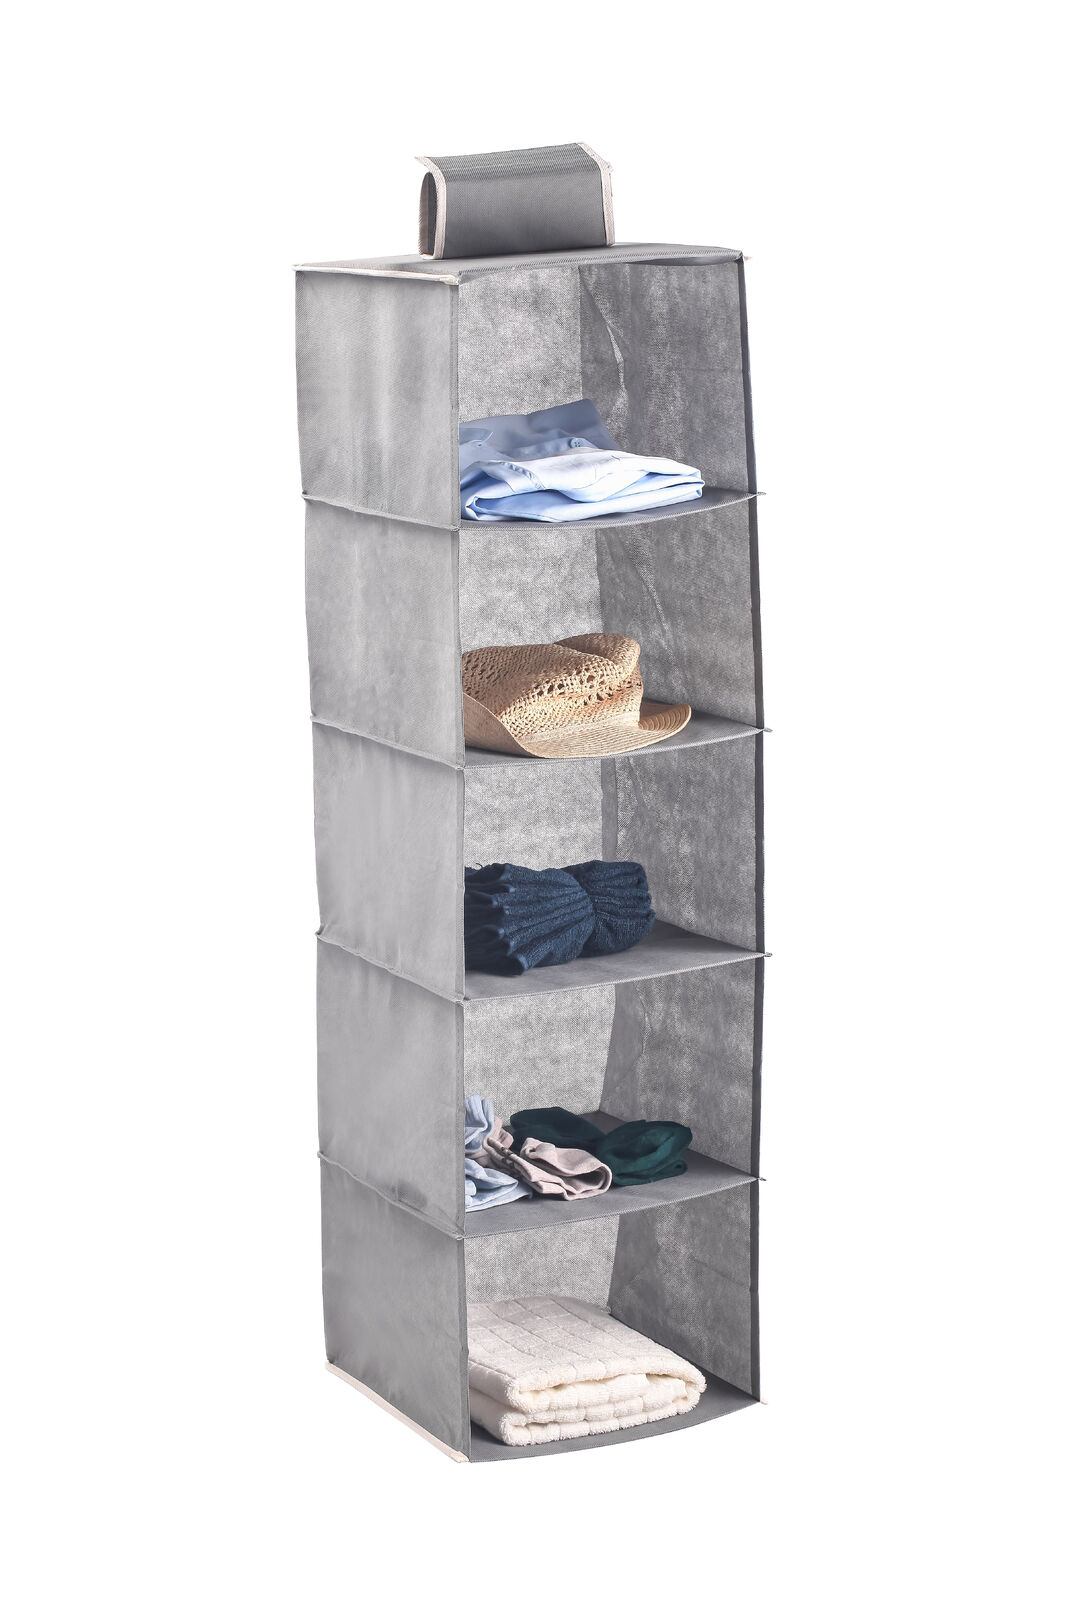 5 Tier Shelf Hanging Closet Organizer and Storage for Clothes